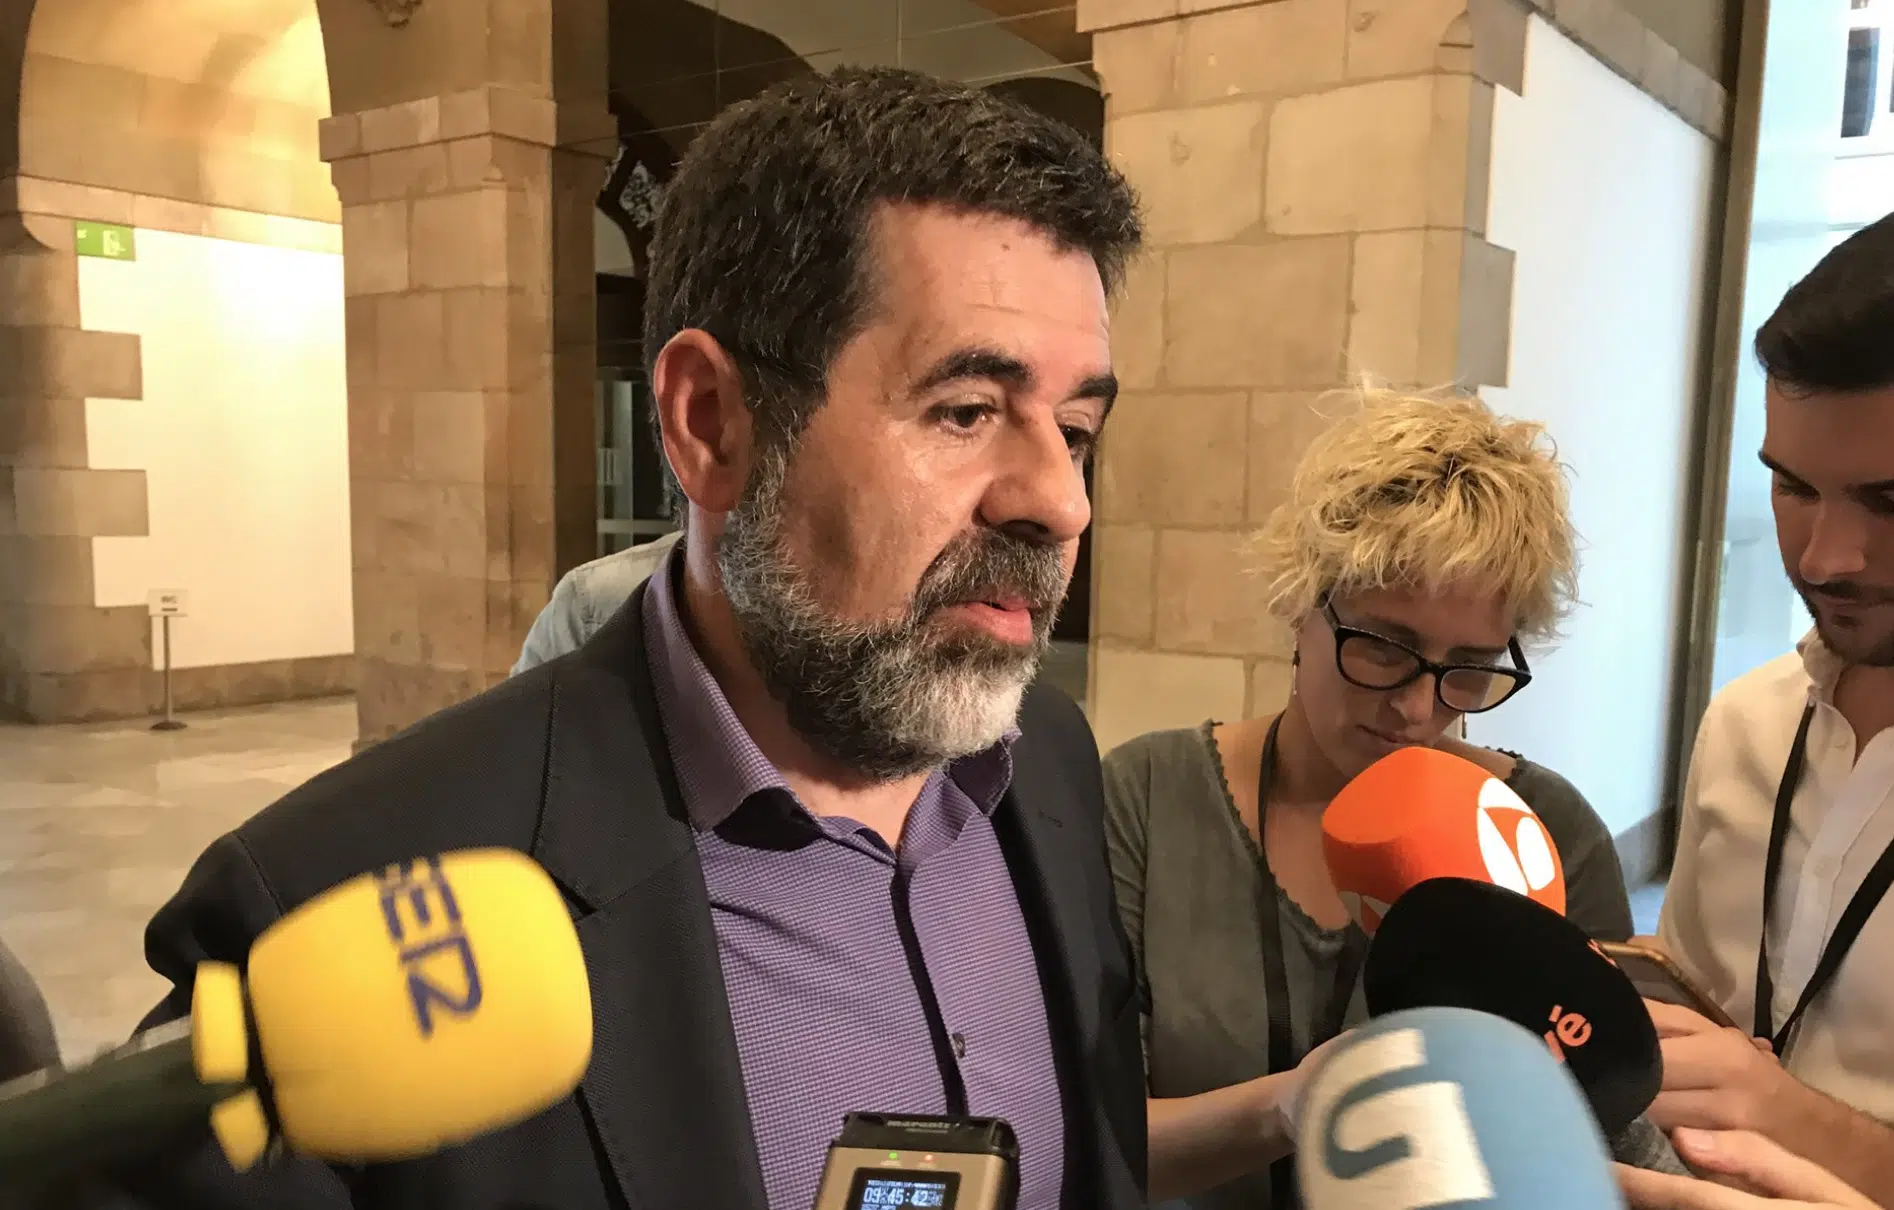 Interior castiga a Jordi Sànchez con 18 horas diarias en la celda por su mensaje electoral